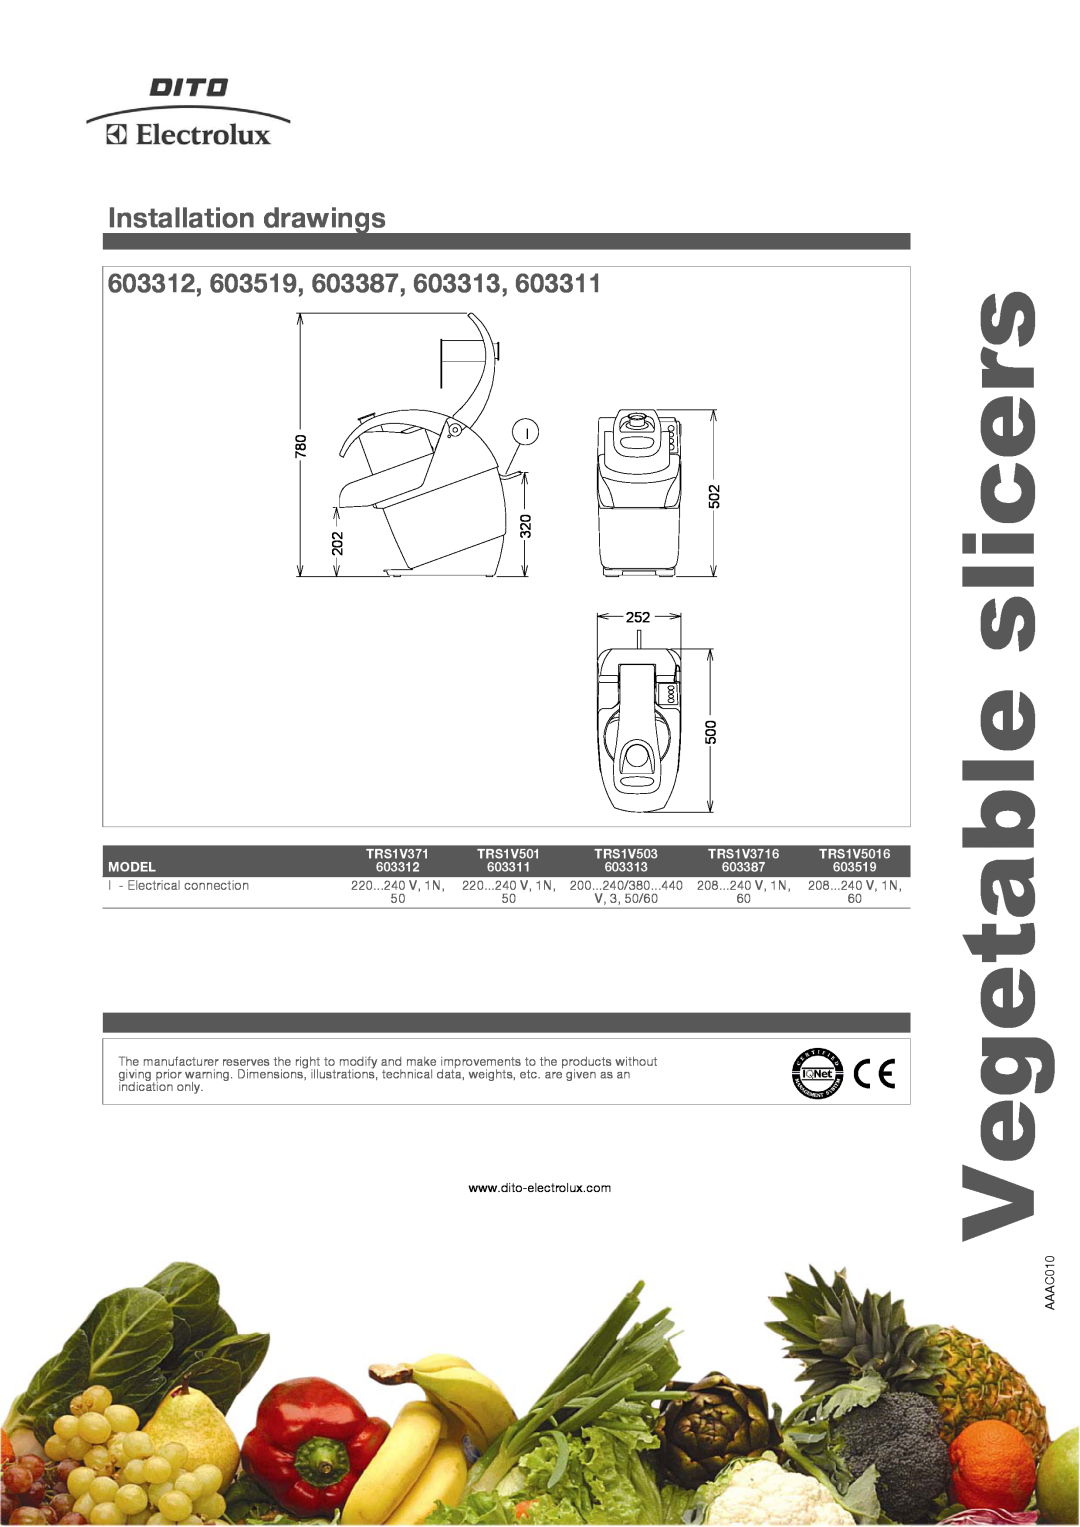 Electrolux TRS1V5016 Installation drawings, 603312, 603519, 603387, 603313, slicers, Vegetable, Model, 220...240 V, 1N 